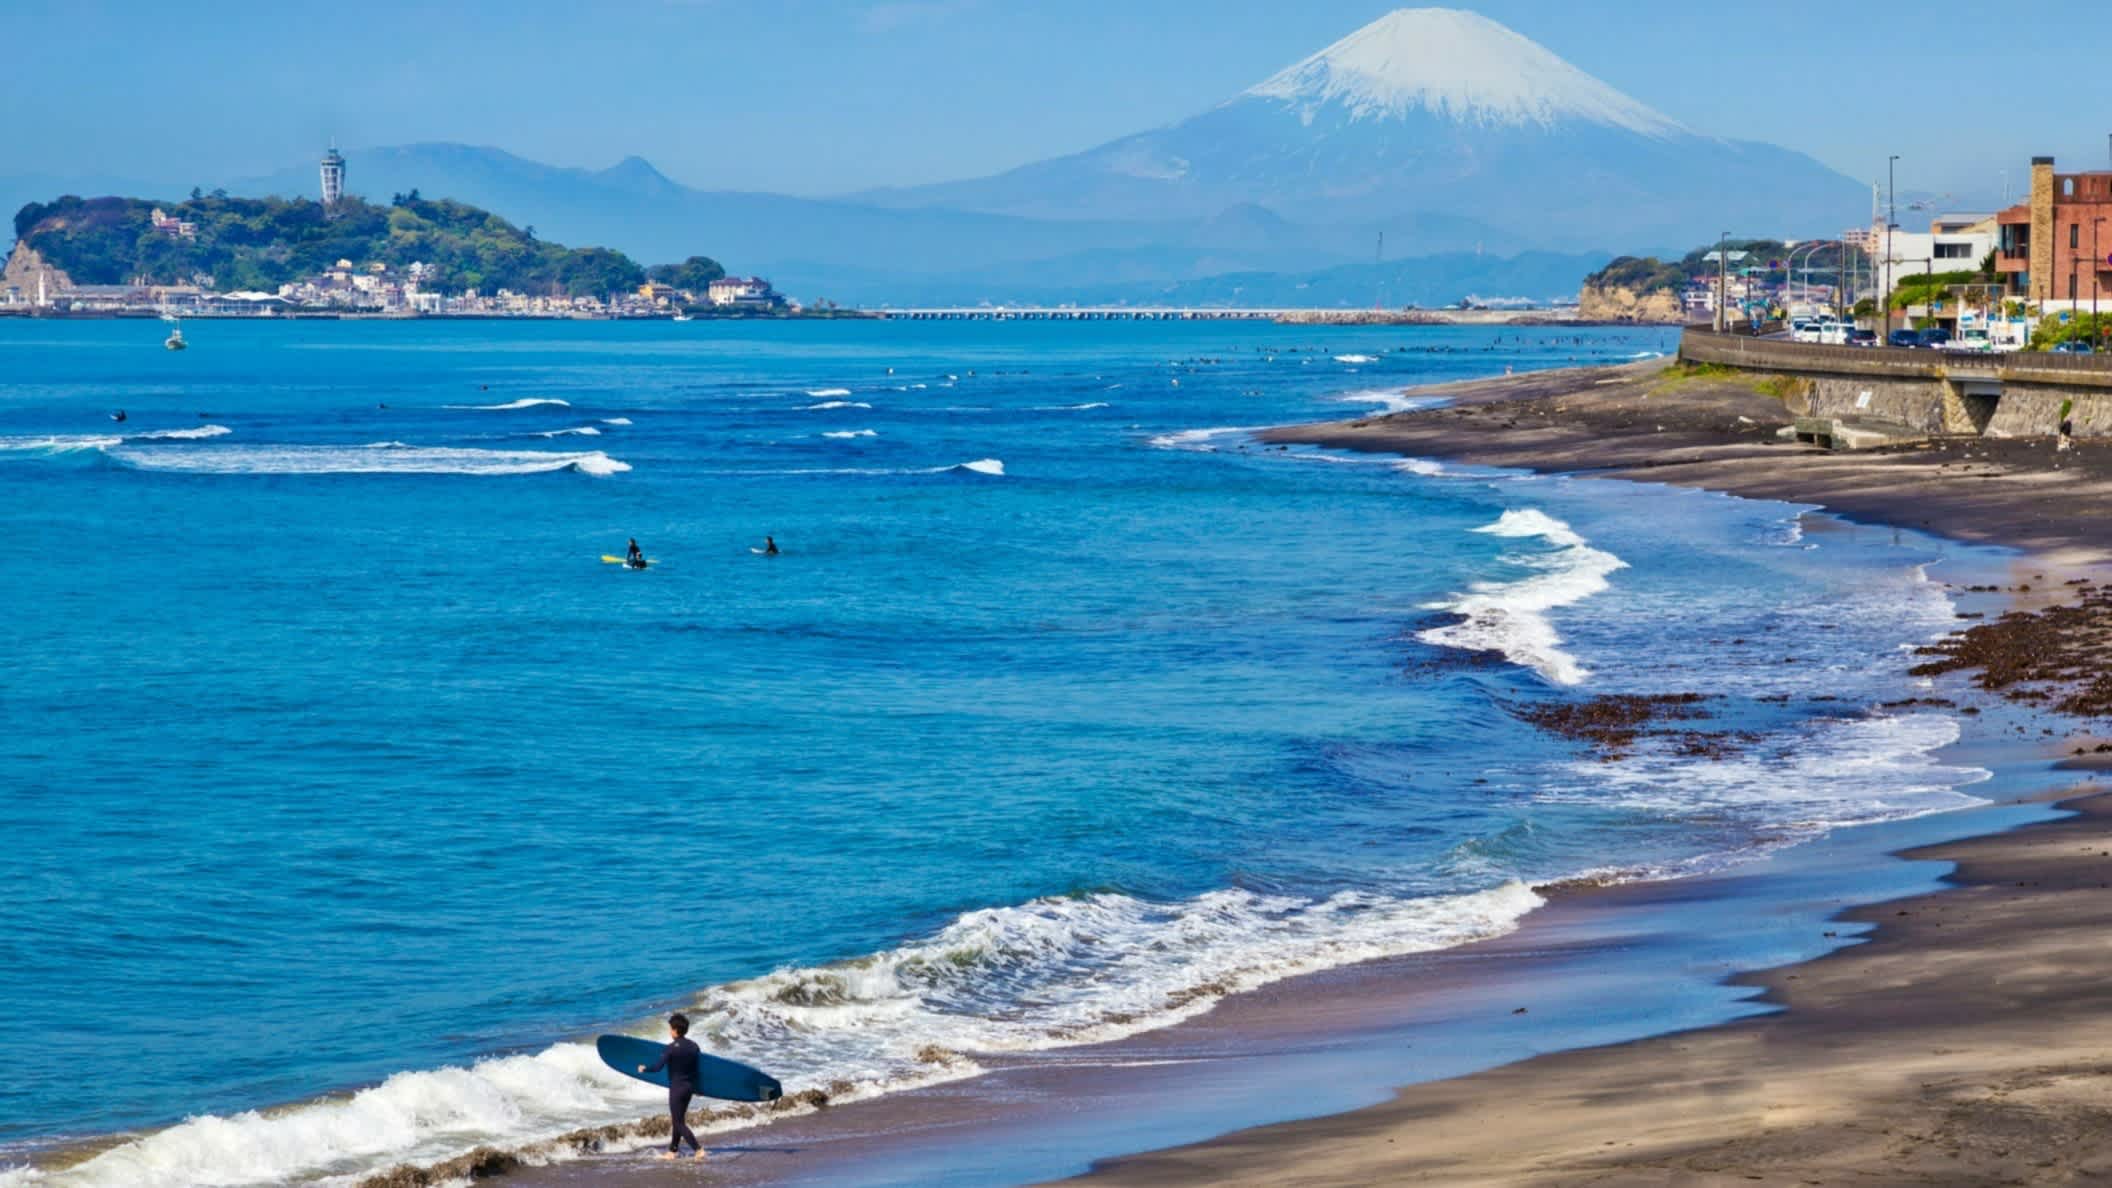 Surfer am Naturstrand von Kamakura, Kanagawa, Japan mit dem Mount Fuji im Hintergrund.